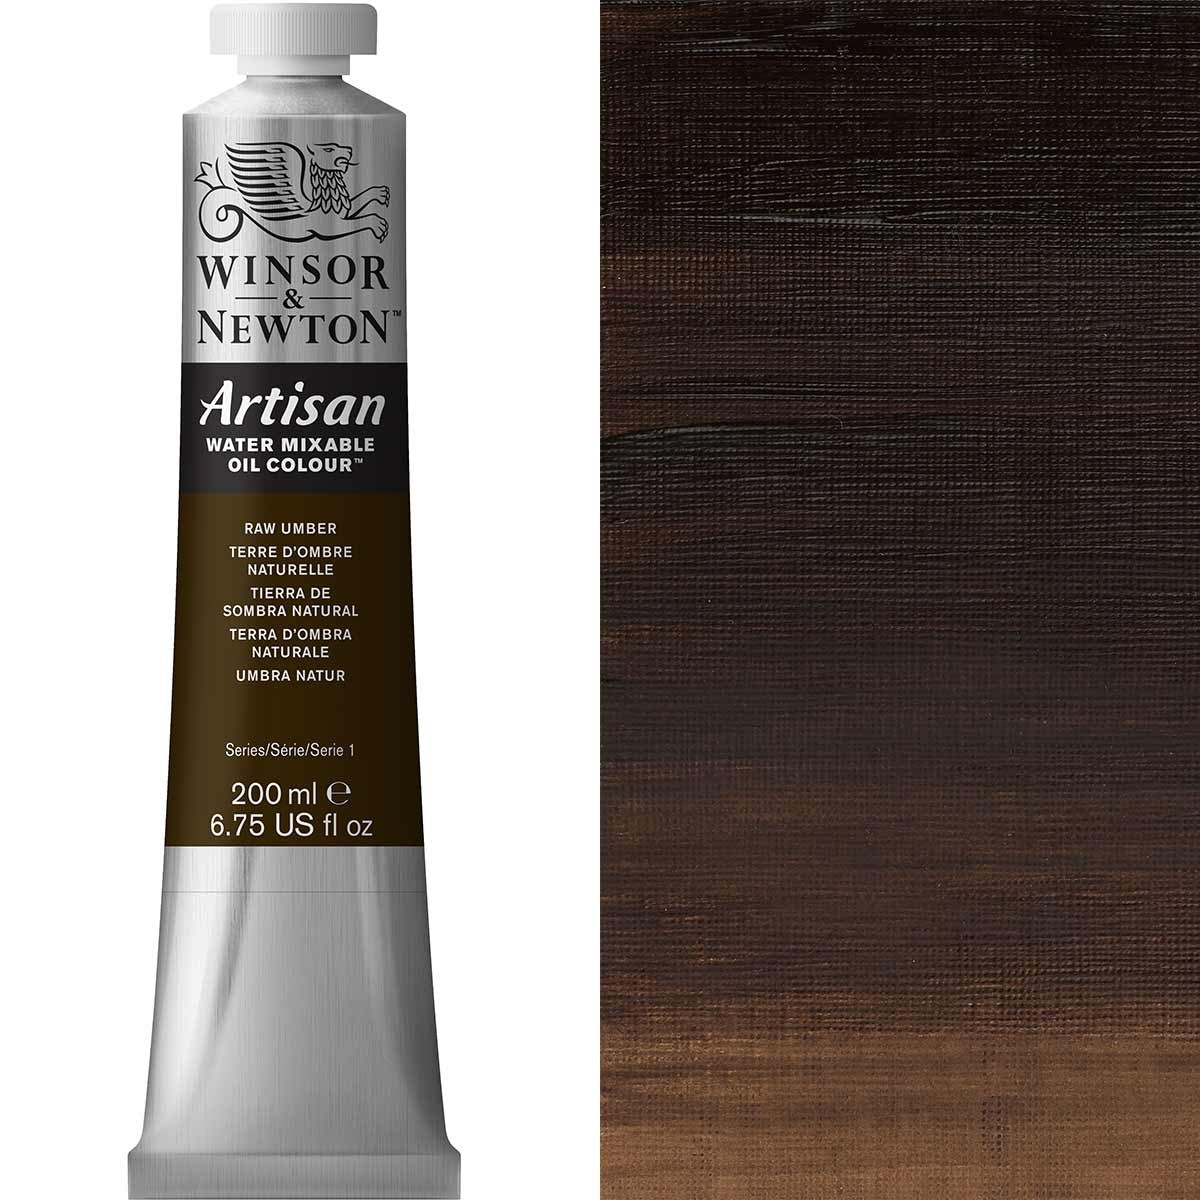 Winsor e Newton - Watermixable di colore olio artigiano - 200 ml - RAW UMBER